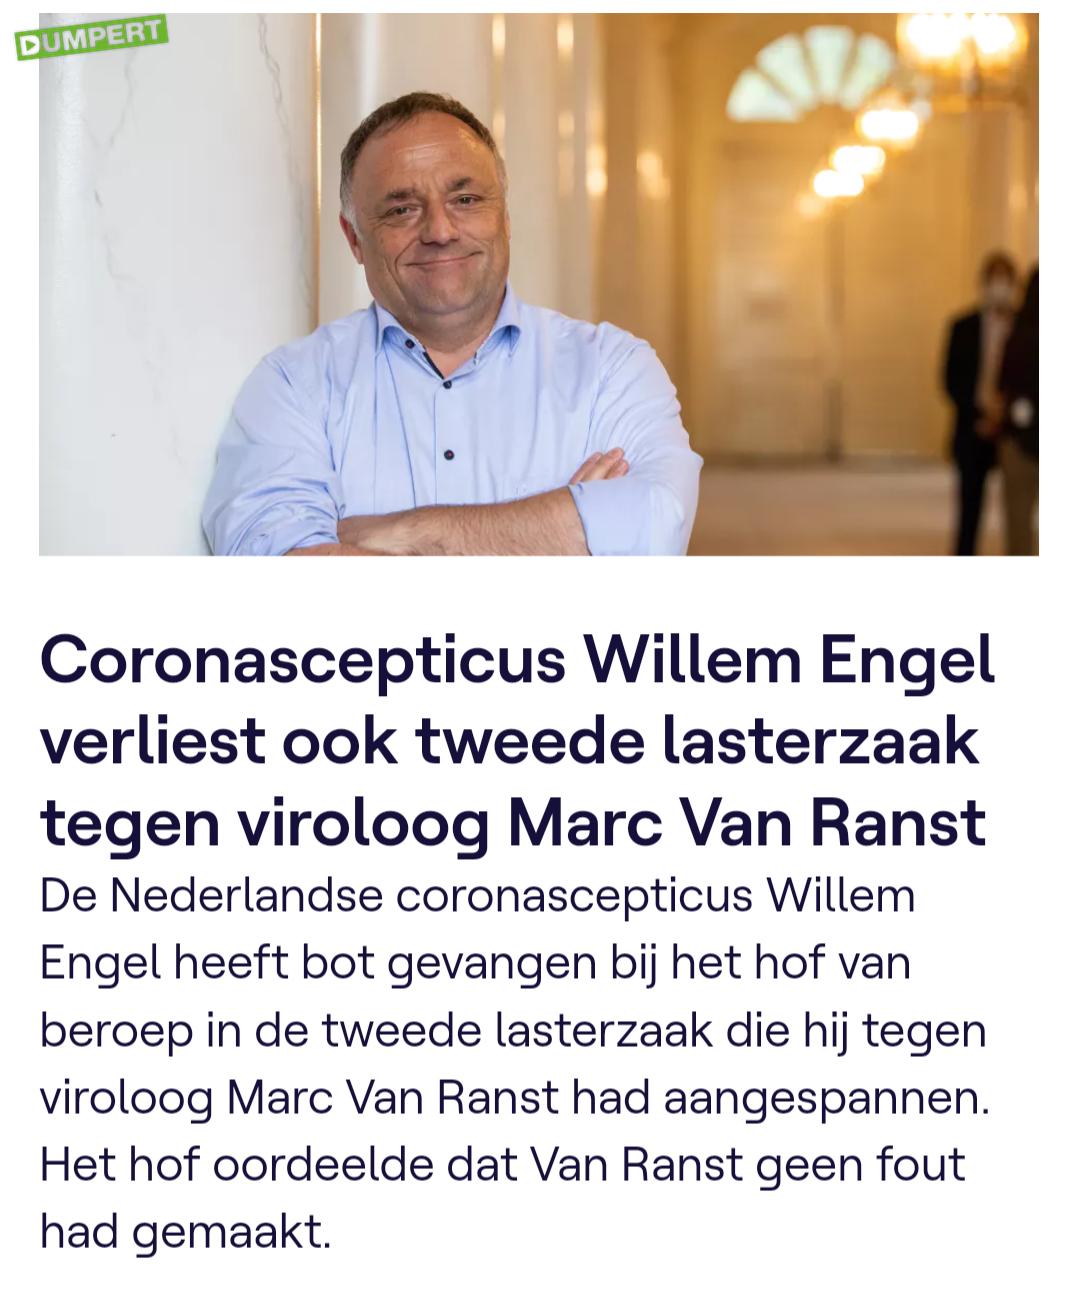 Marc van Ranst VS Willem Engel